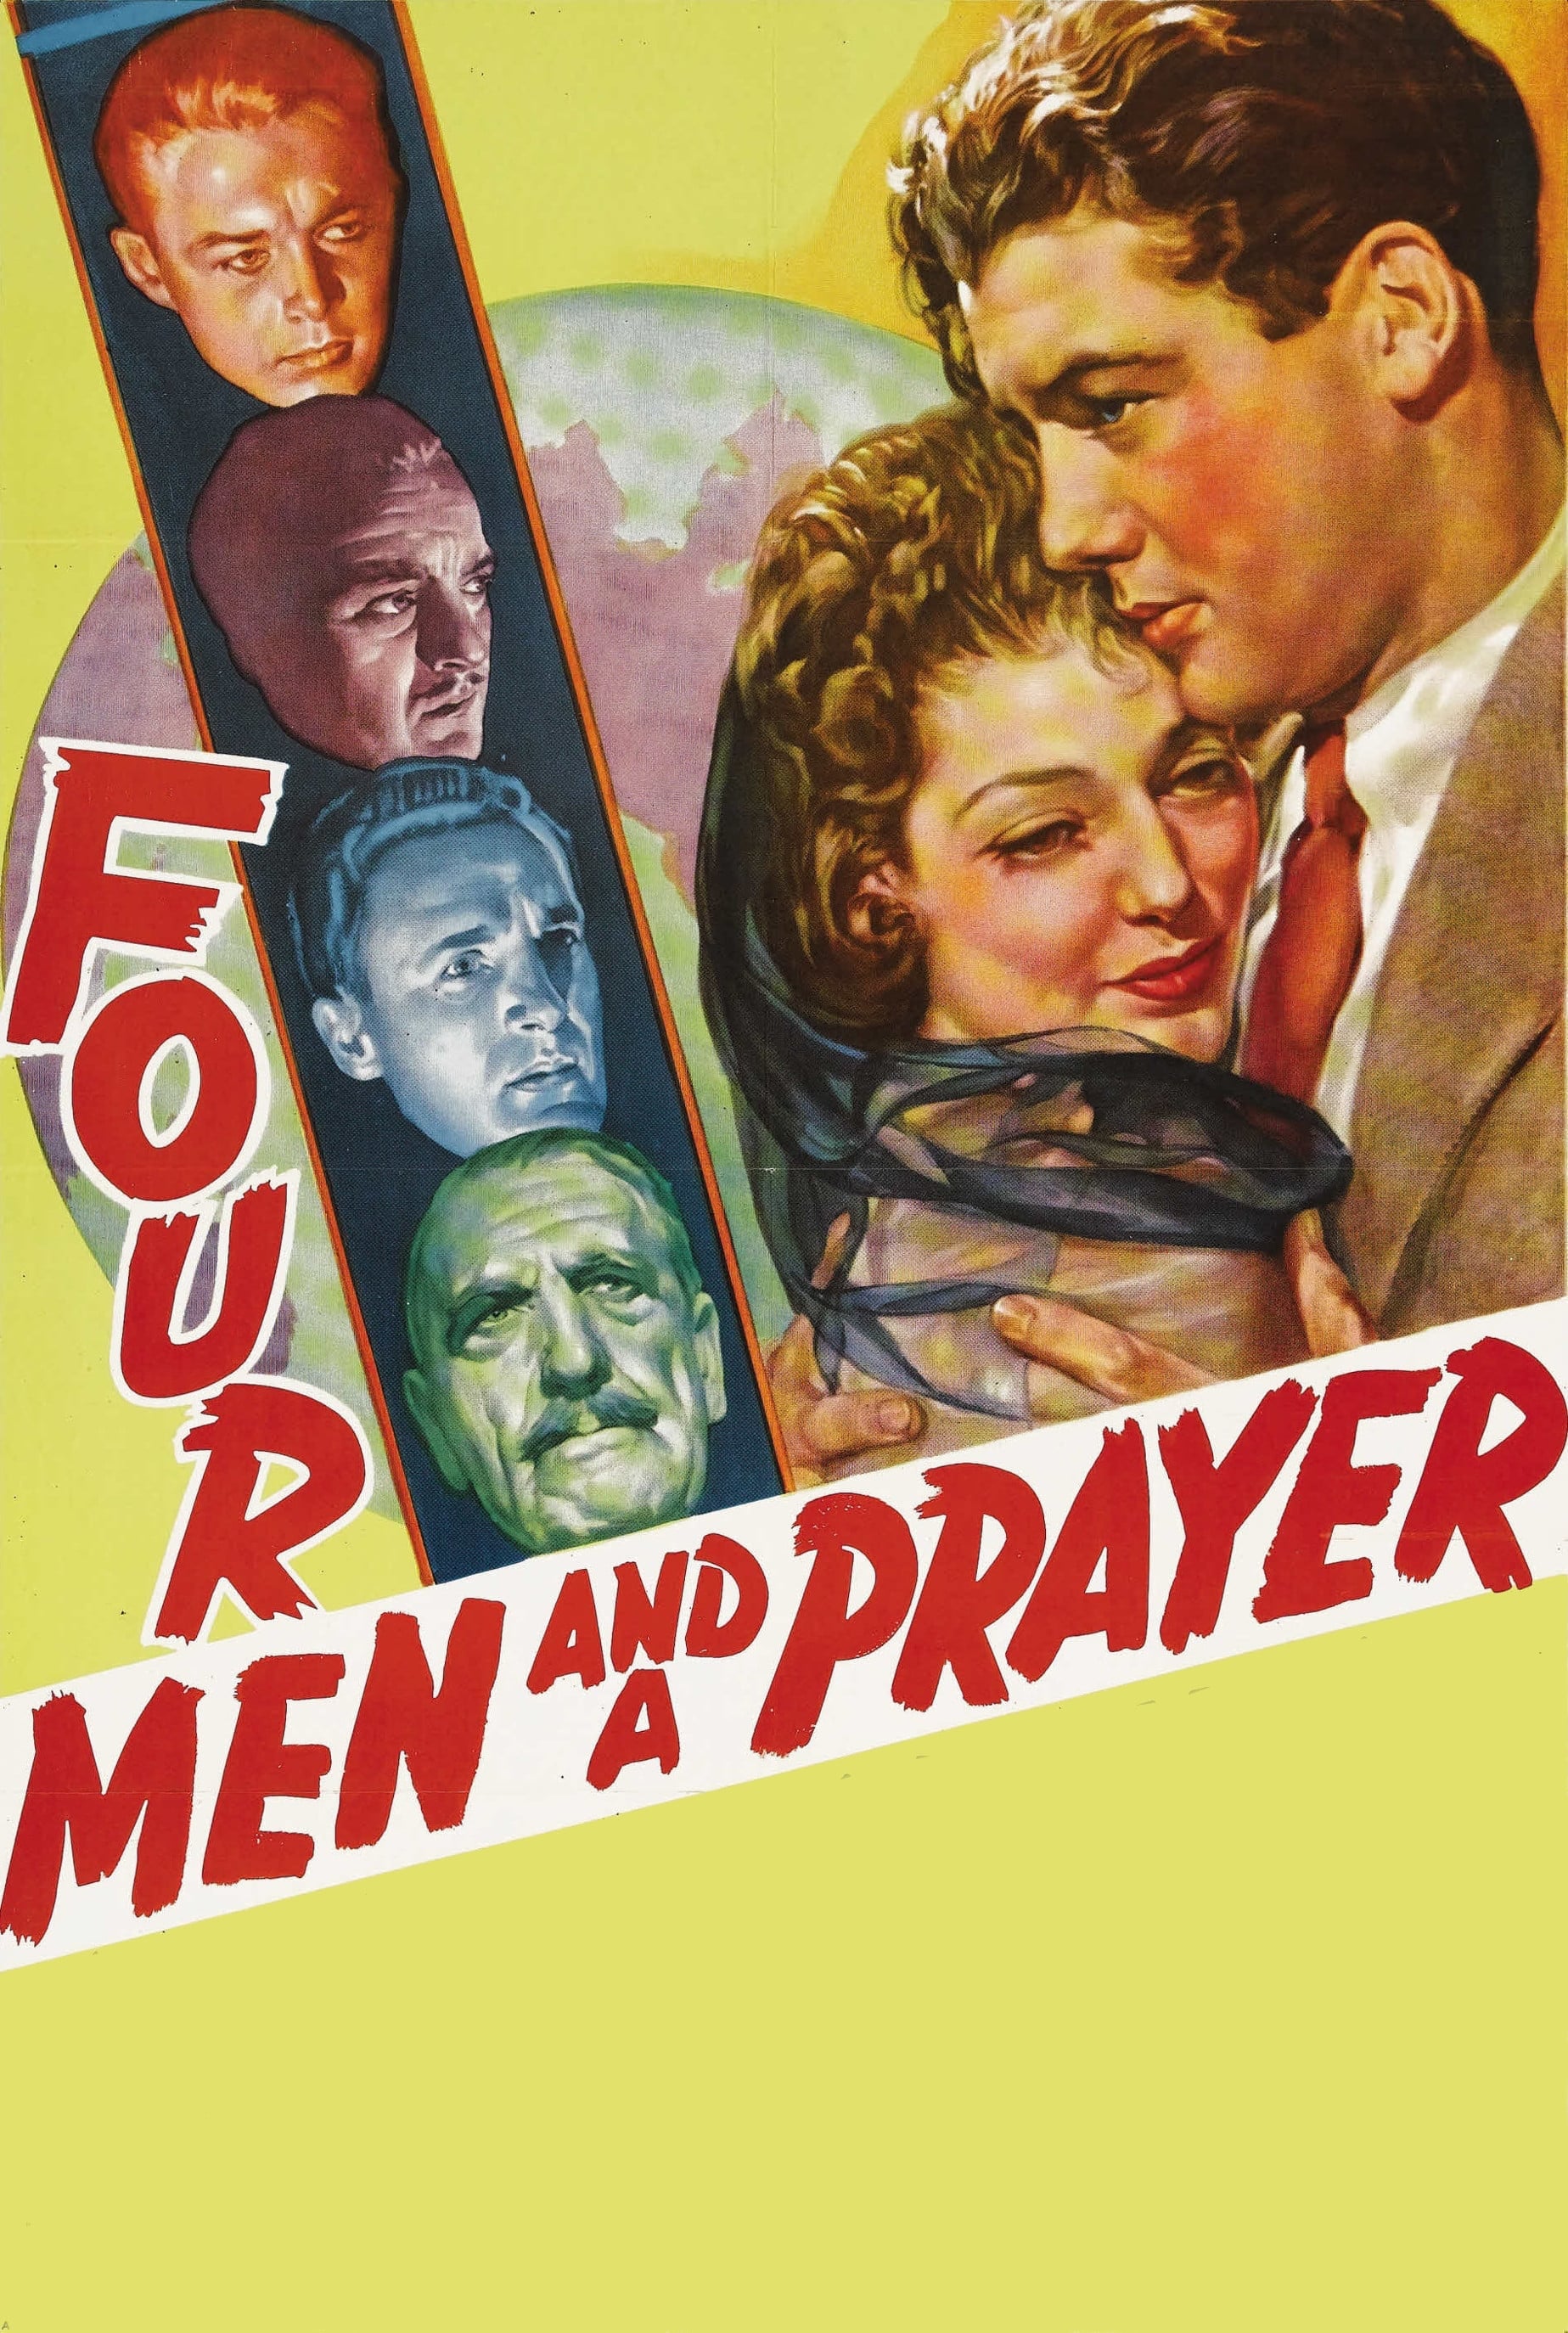 Four Men and a Prayer (1938)